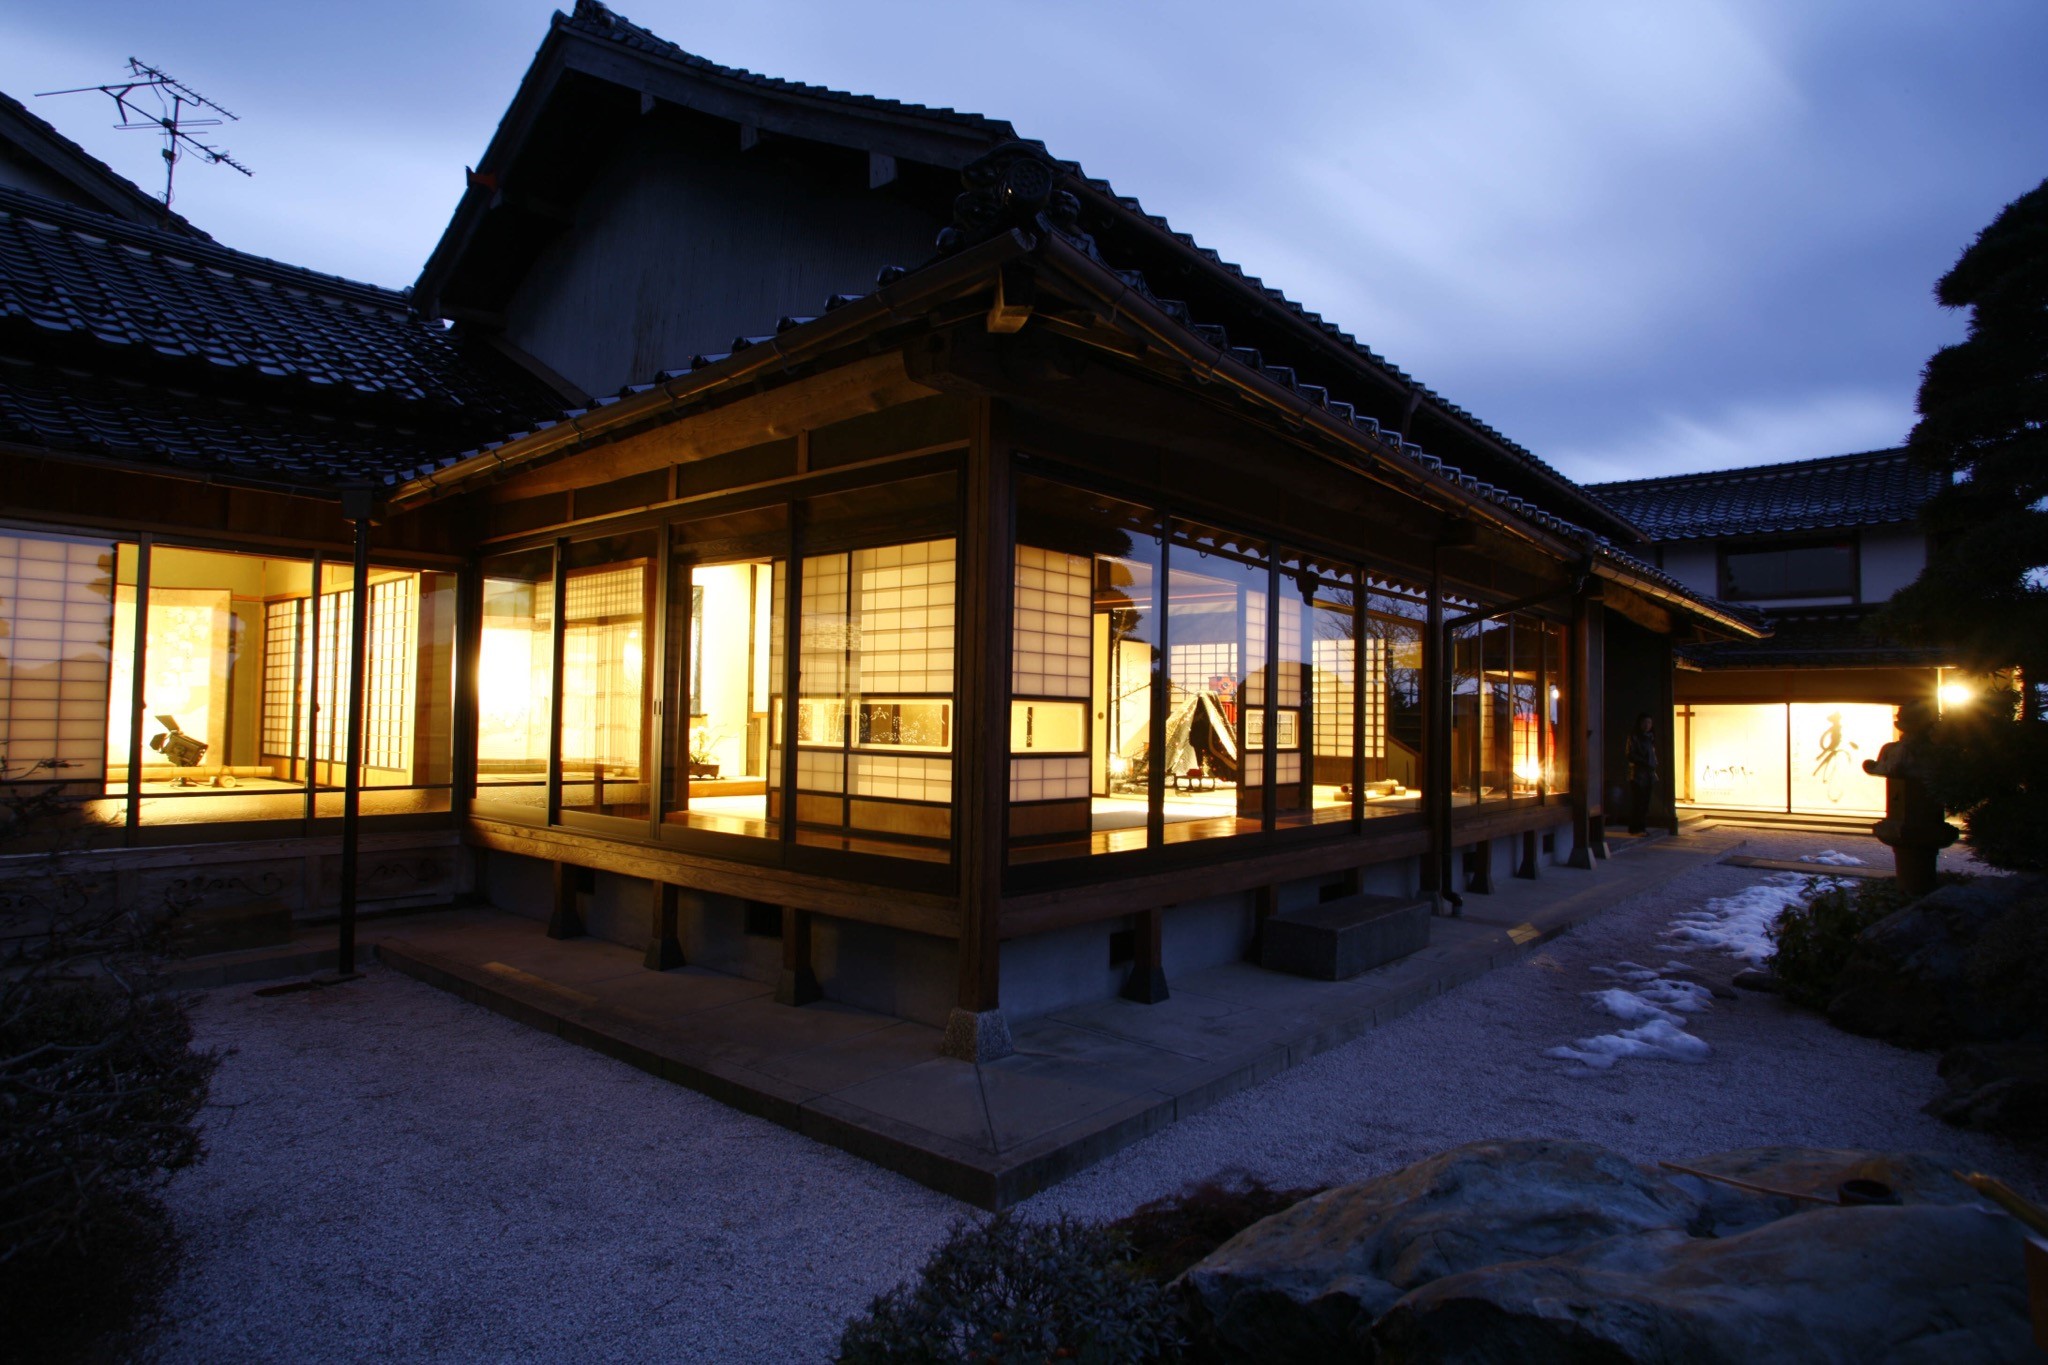 Izumo Museum of Quilt Art